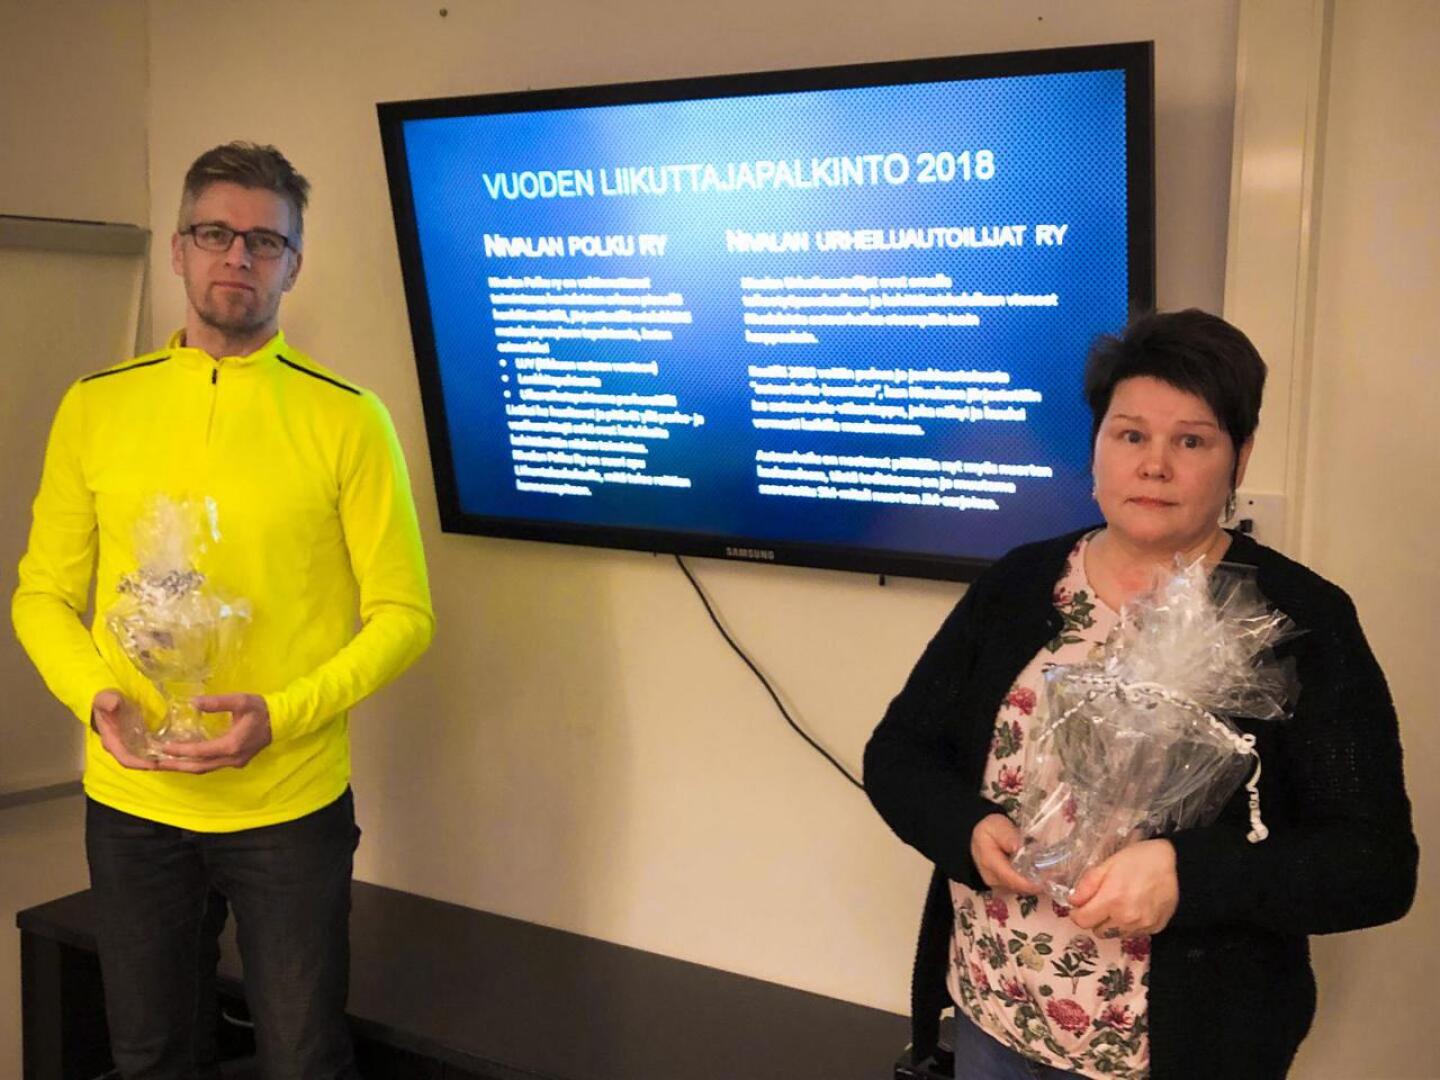 Vuoden liikuttaja -palkinnon vastaanottivat Onni Vähäaho Nivalan Polku ry:stä ja Mirja Maijala Nivalan Urheiluautoilijoista.